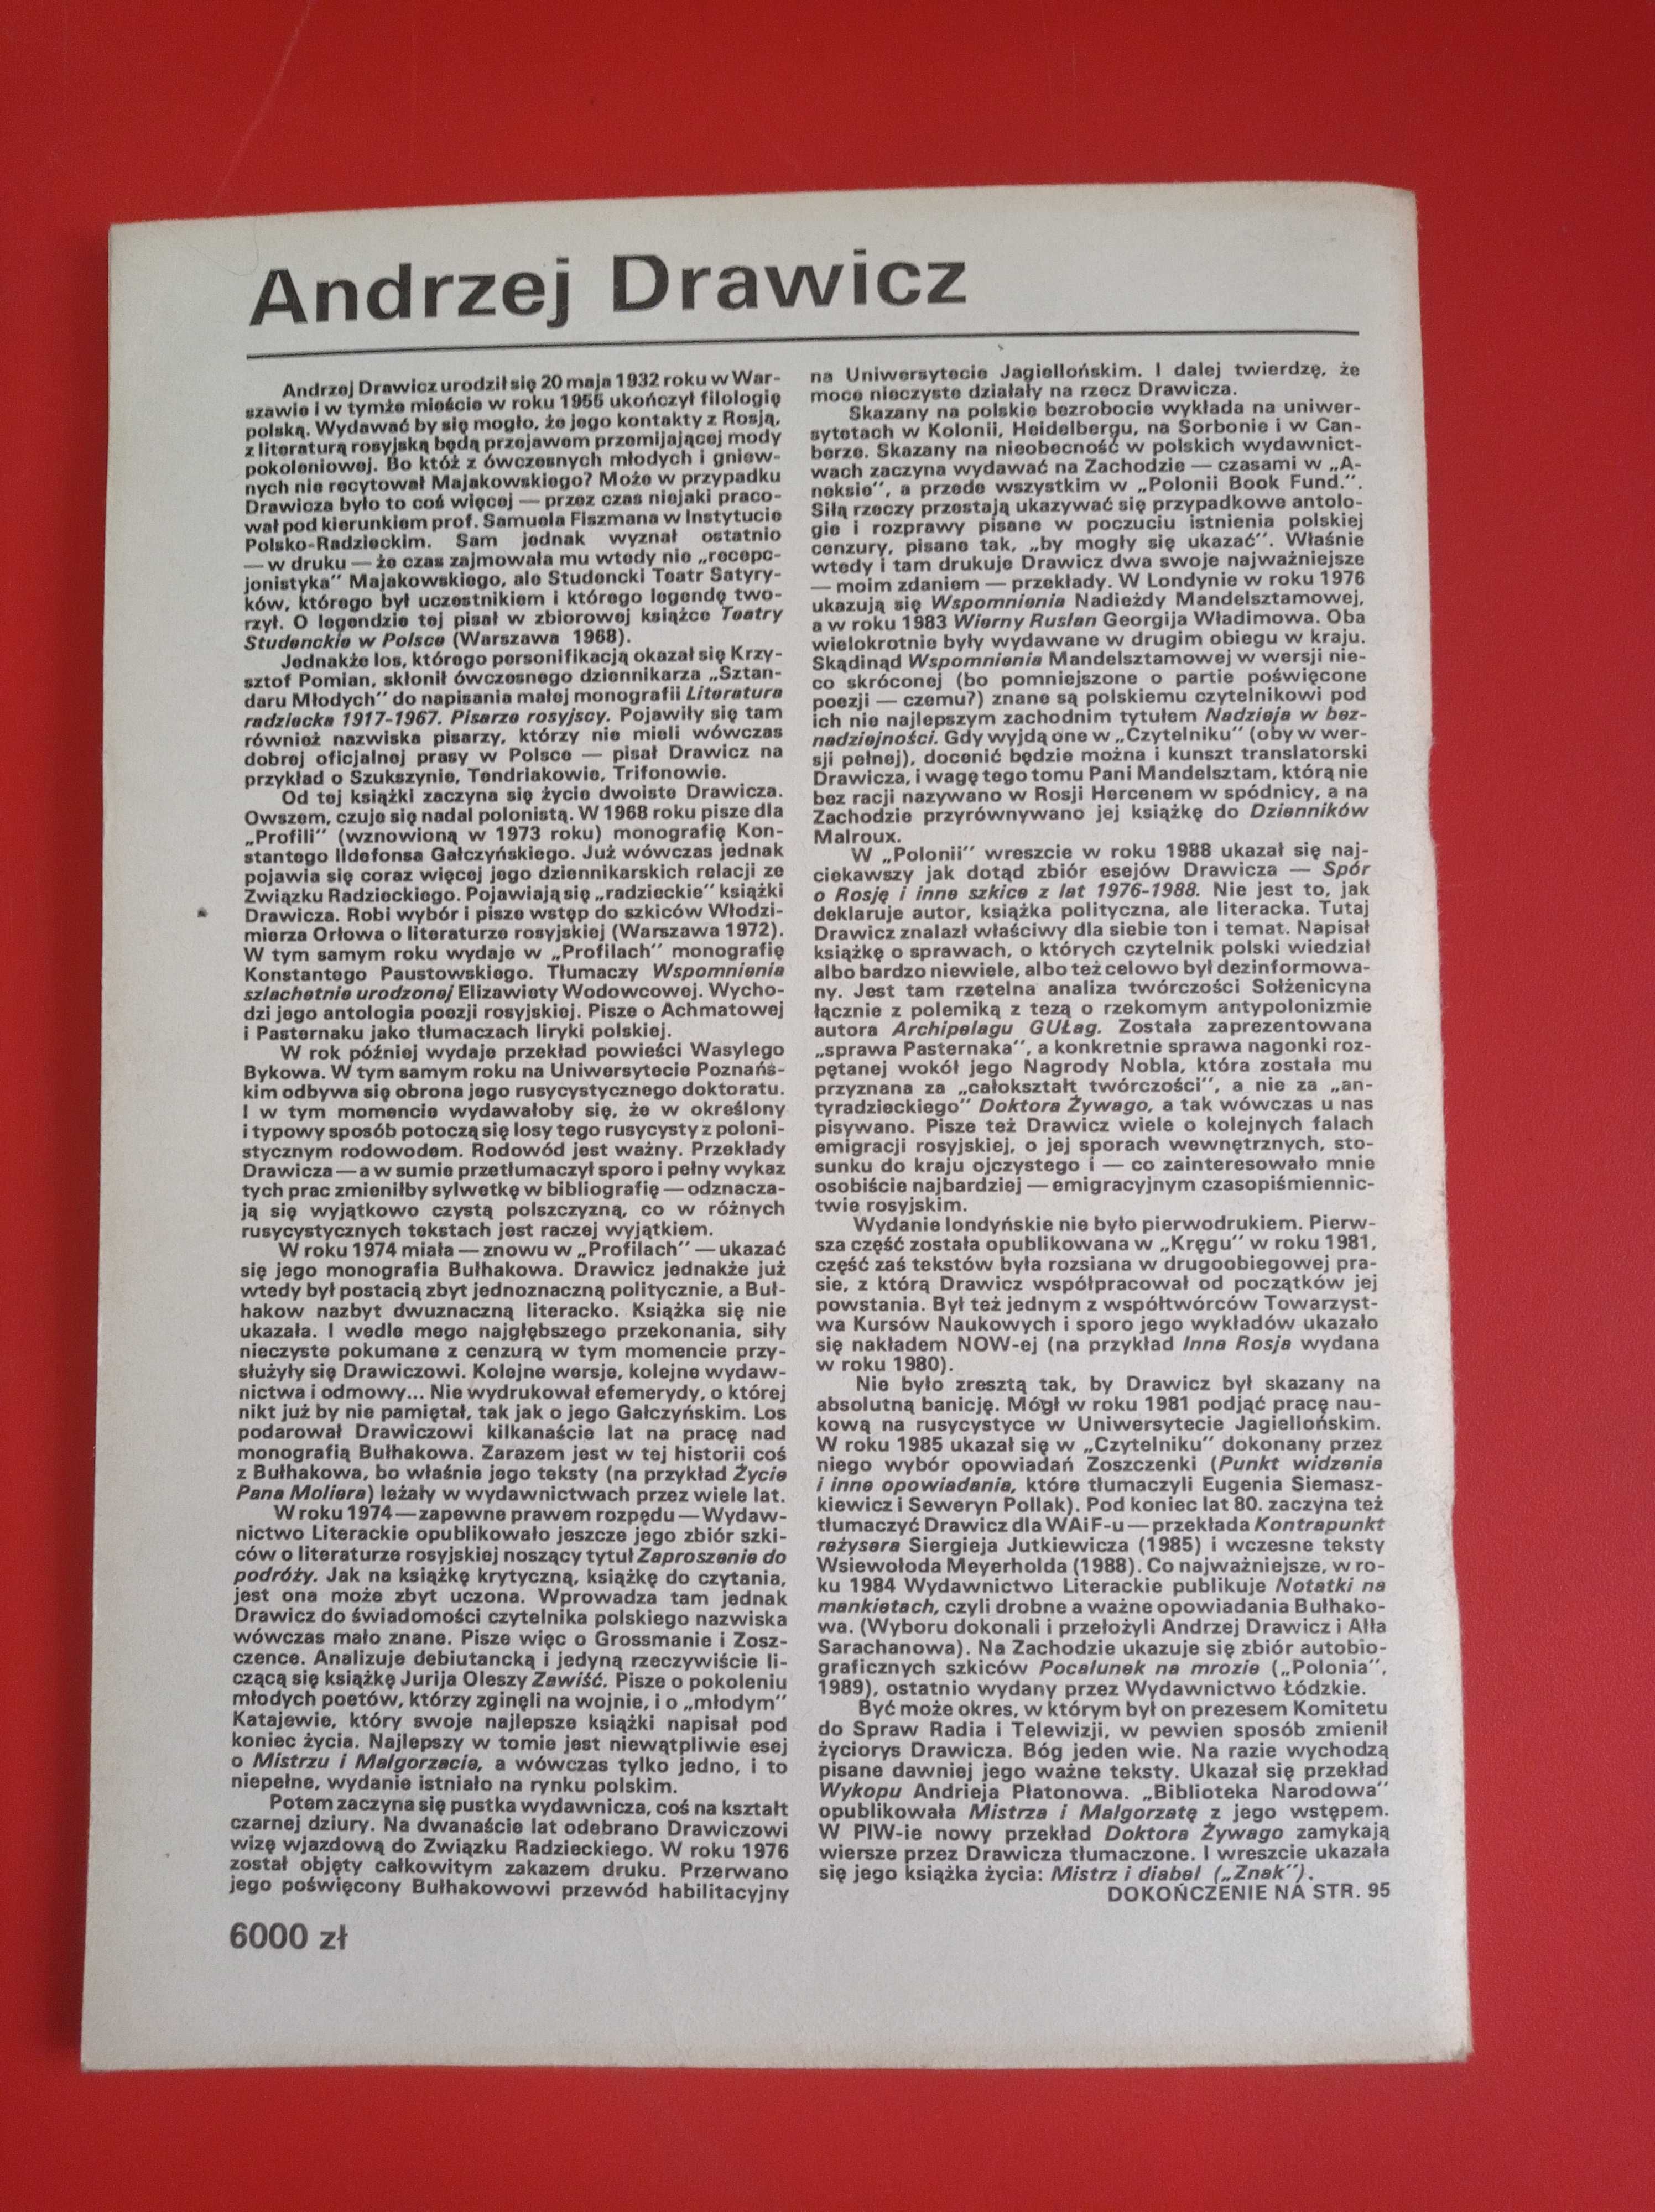 Nowe książki, nr 1, styczeń 1991, Andrzej Drawicz